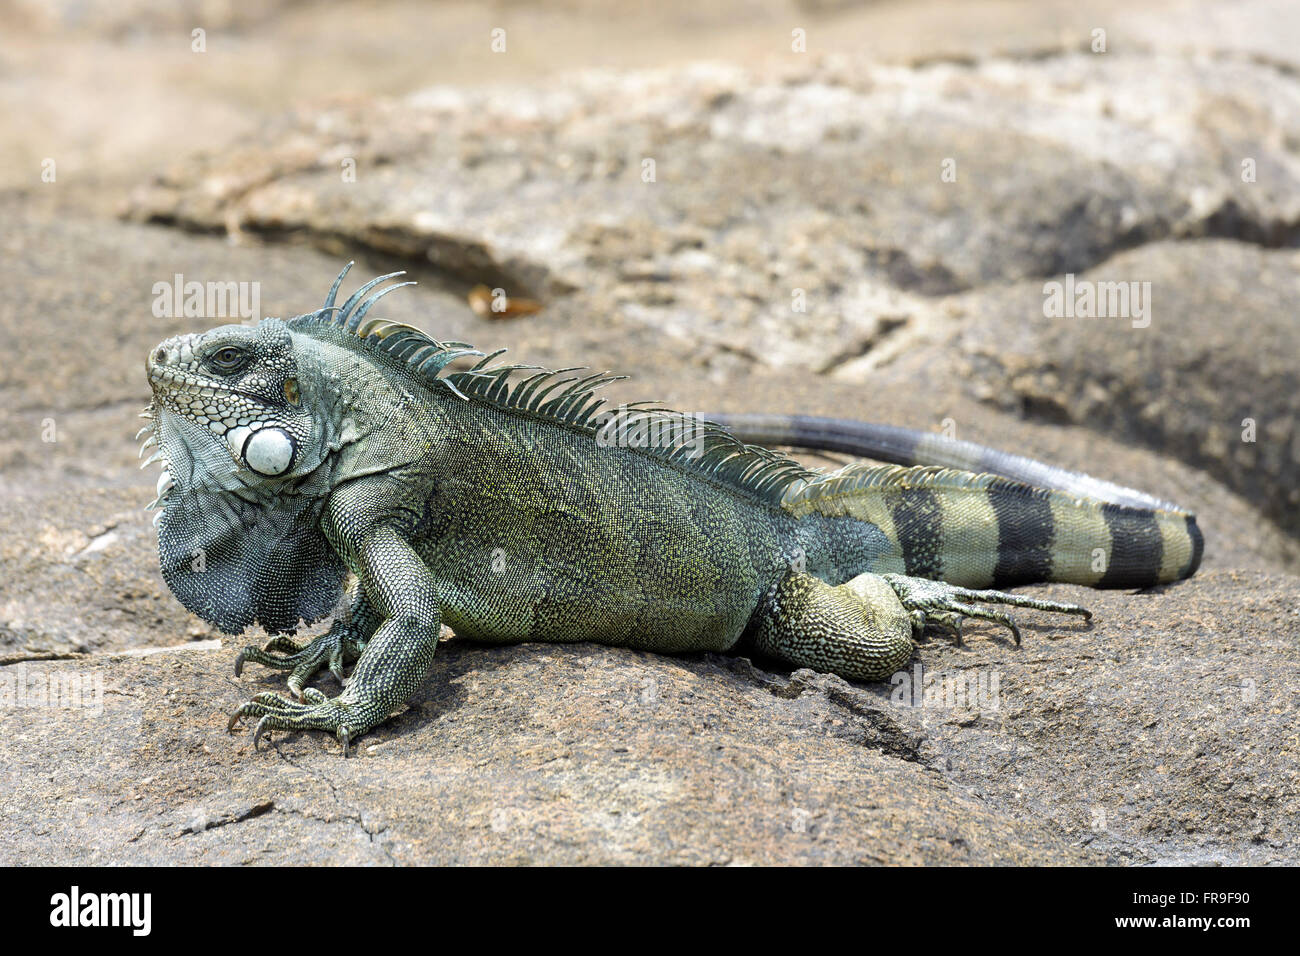 Iguana verde asoleándose en piedra Foto de stock